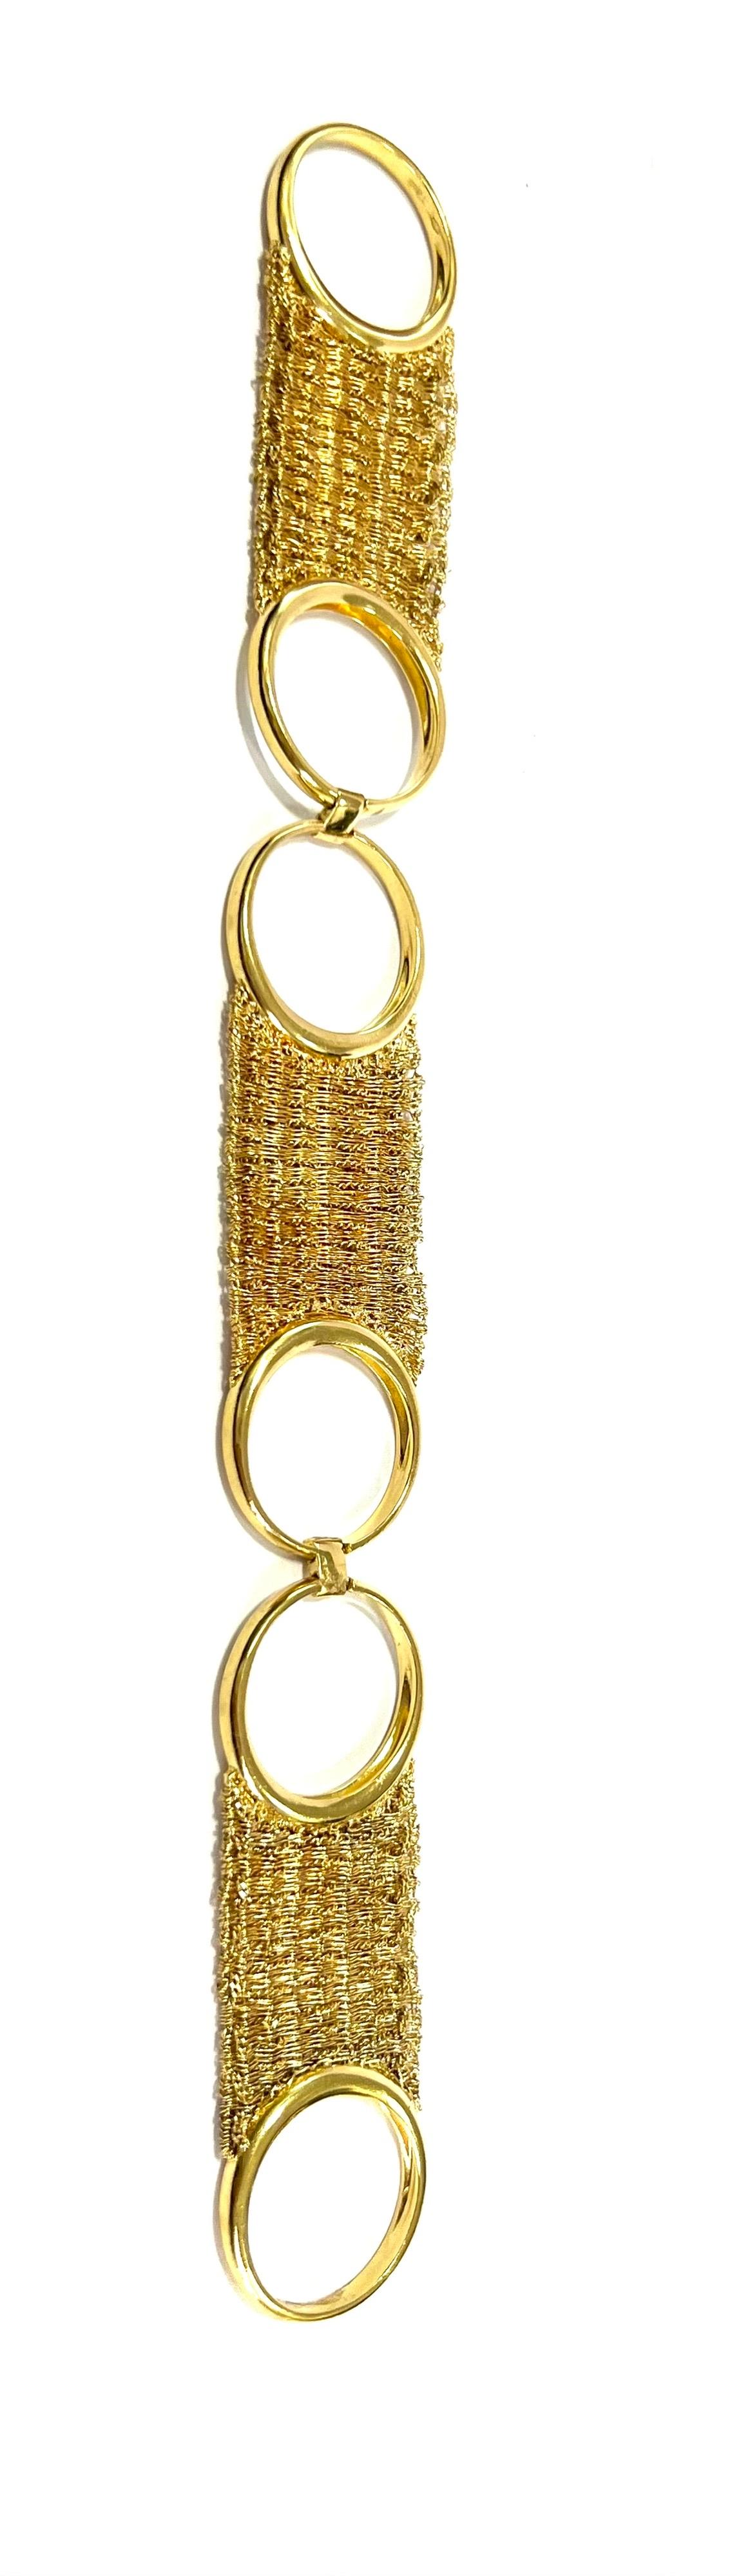 Women's 18 Karat Yellow Gold Oscar Set Foulard Collection - Ring